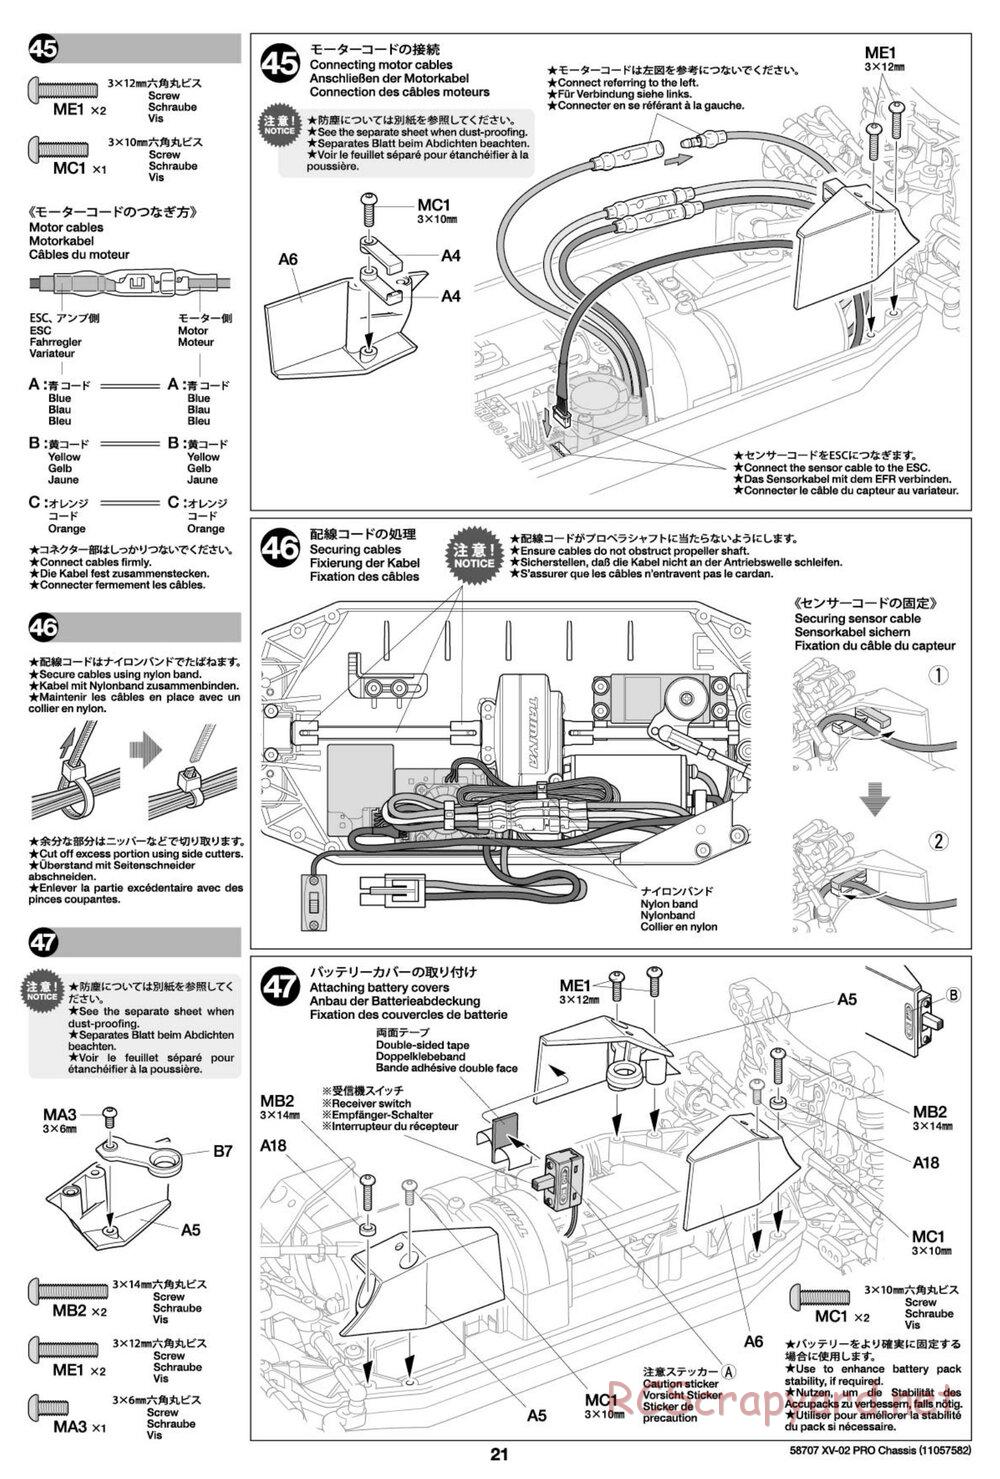 Tamiya - XV-02 Pro Chassis - Manual - Page 21